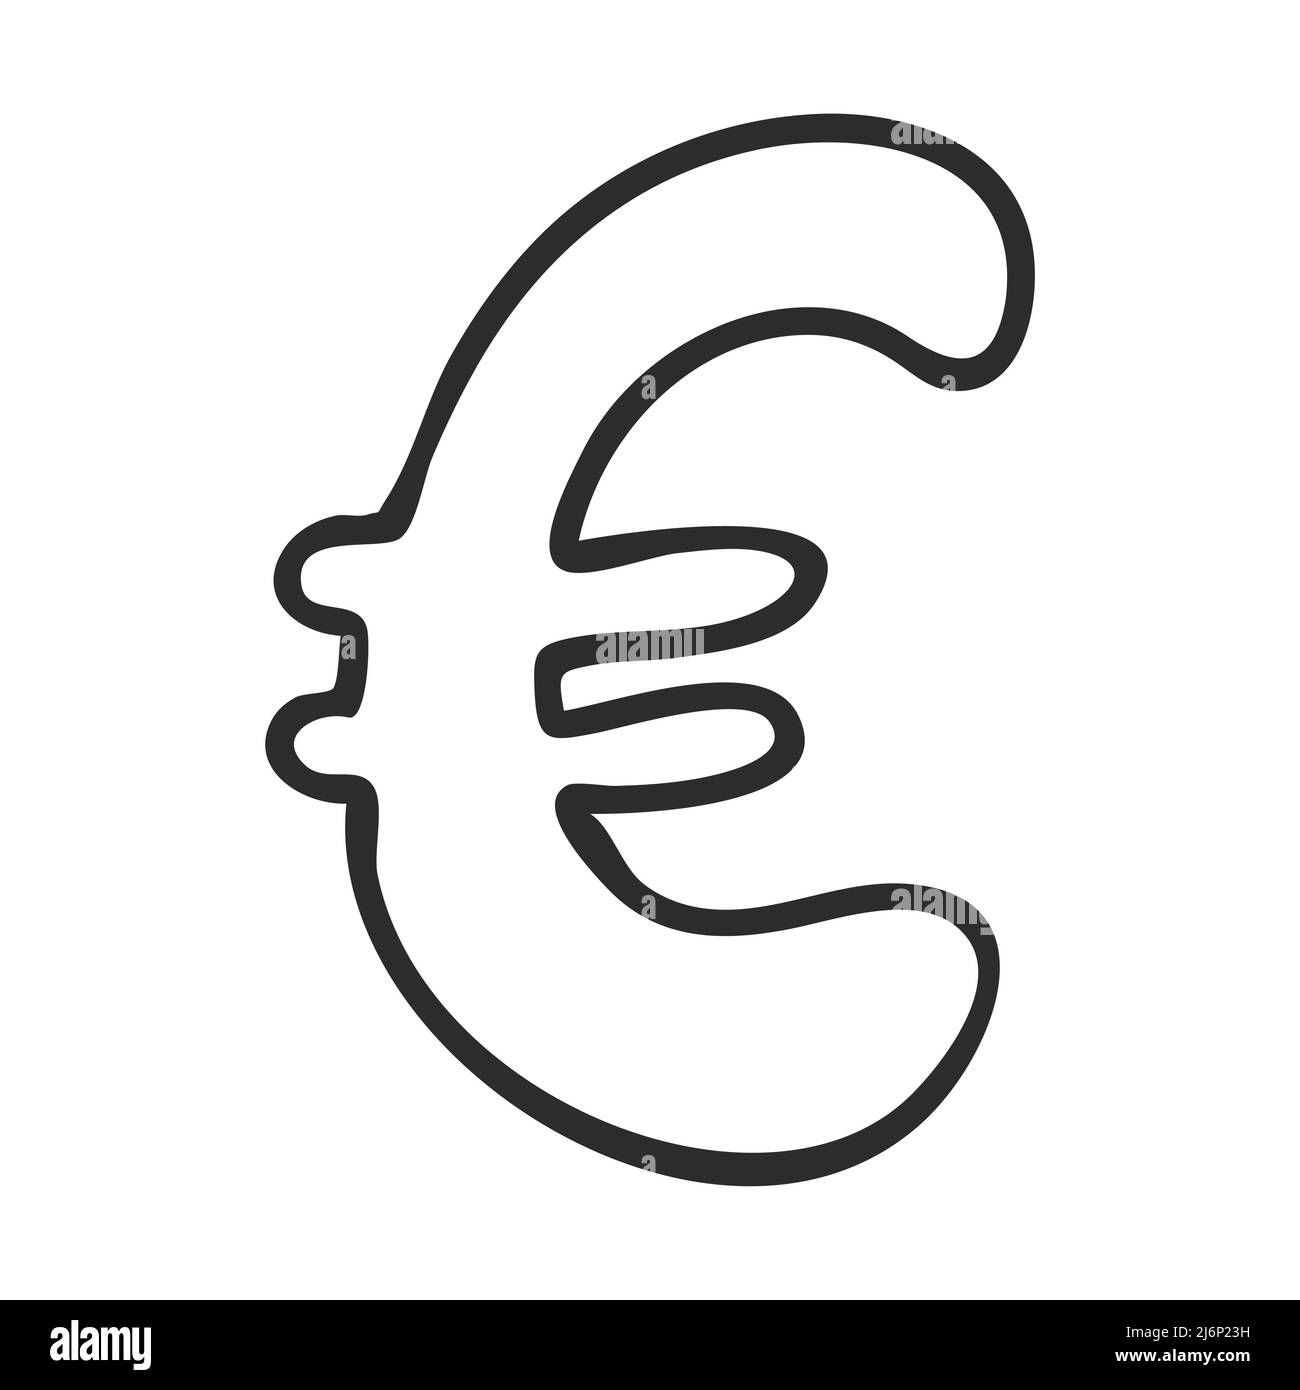 Simbolo di valuta euro in stile Doodle. Valuta internazionale. Disegnato a mano e isolato su sfondo bianco. Illustrazione vettoriale in bianco e nero Illustrazione Vettoriale